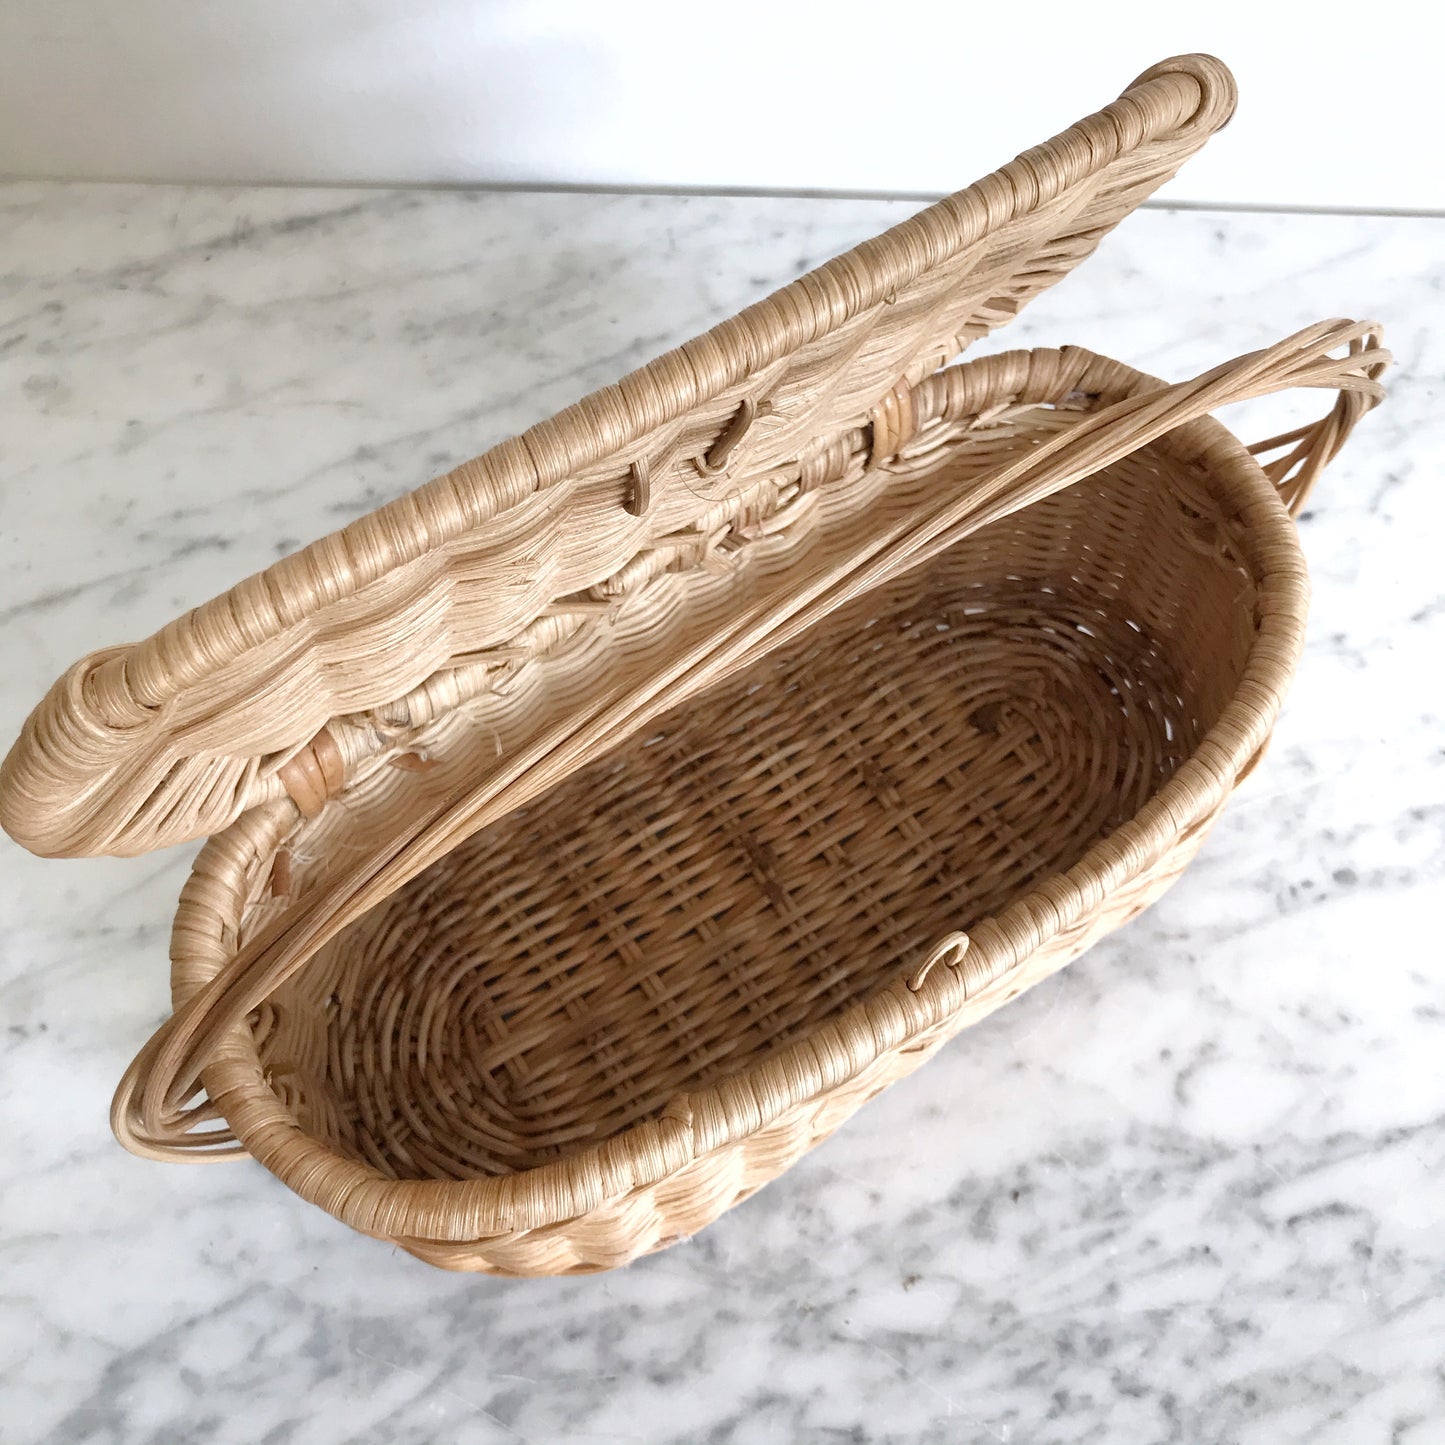 Vintage Locking Wicker Basket Purse